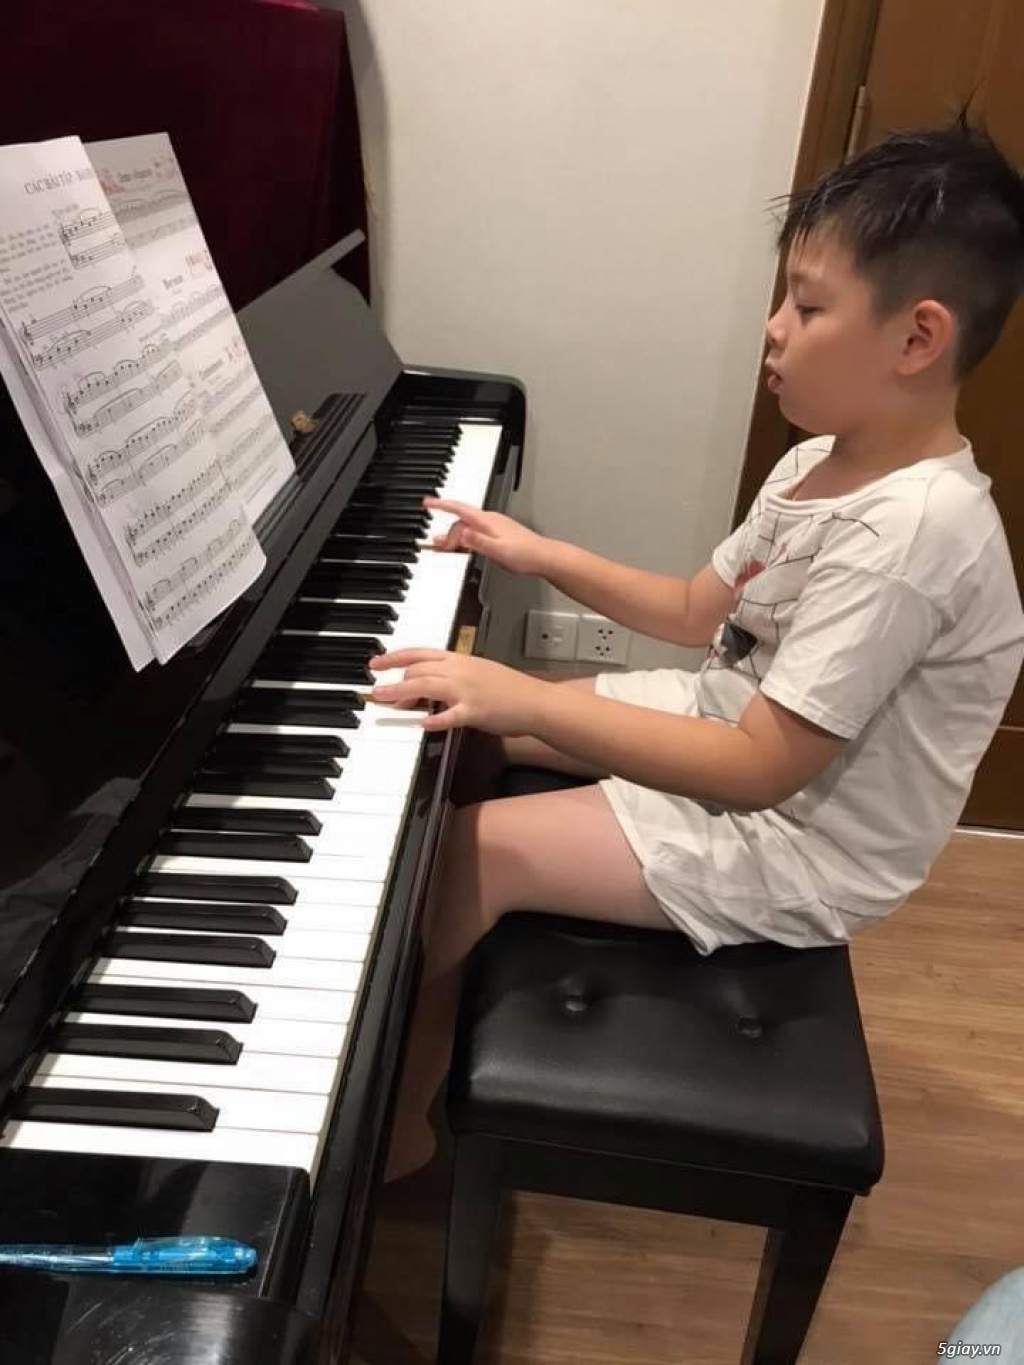 Khai Giảng Lớp Piano Organ hè 2020 Khuyến Mãi Bất Ngờ - 3